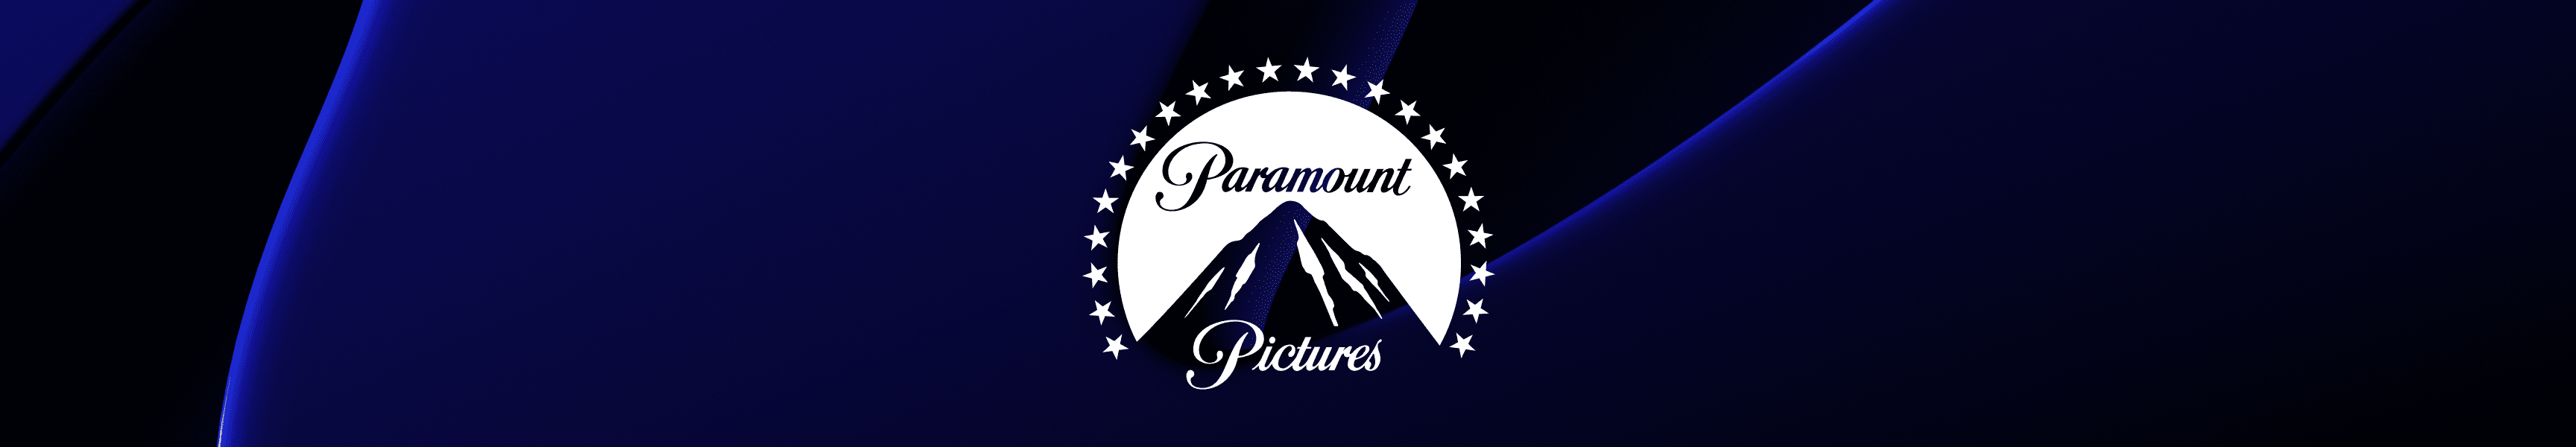 Paramount Pictures Decoración de pared